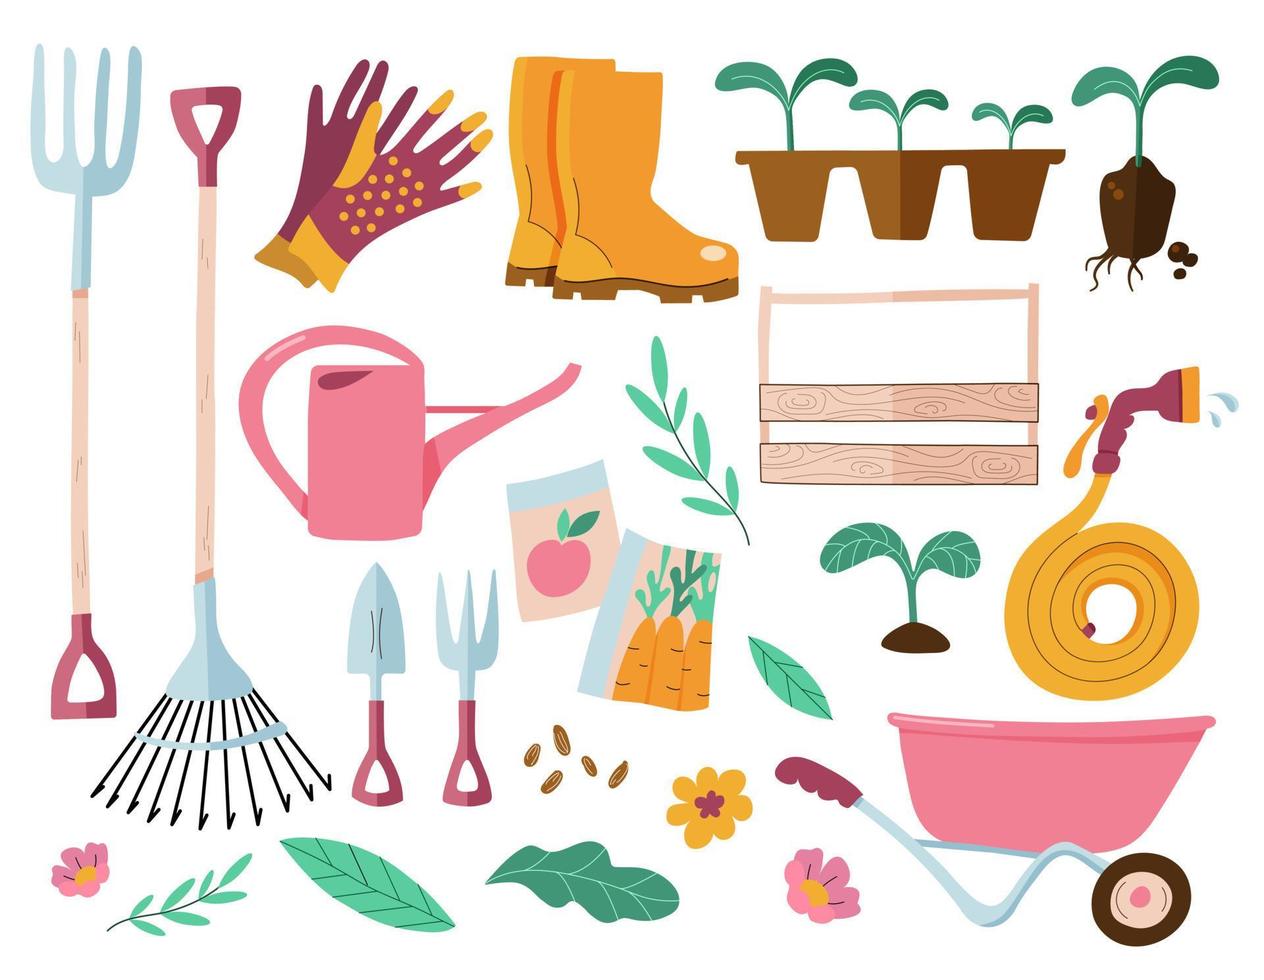 conjunto de ferramentas de jardinagem e equipamentos de jardim. ilustração em vetor de itens para jardinagem.